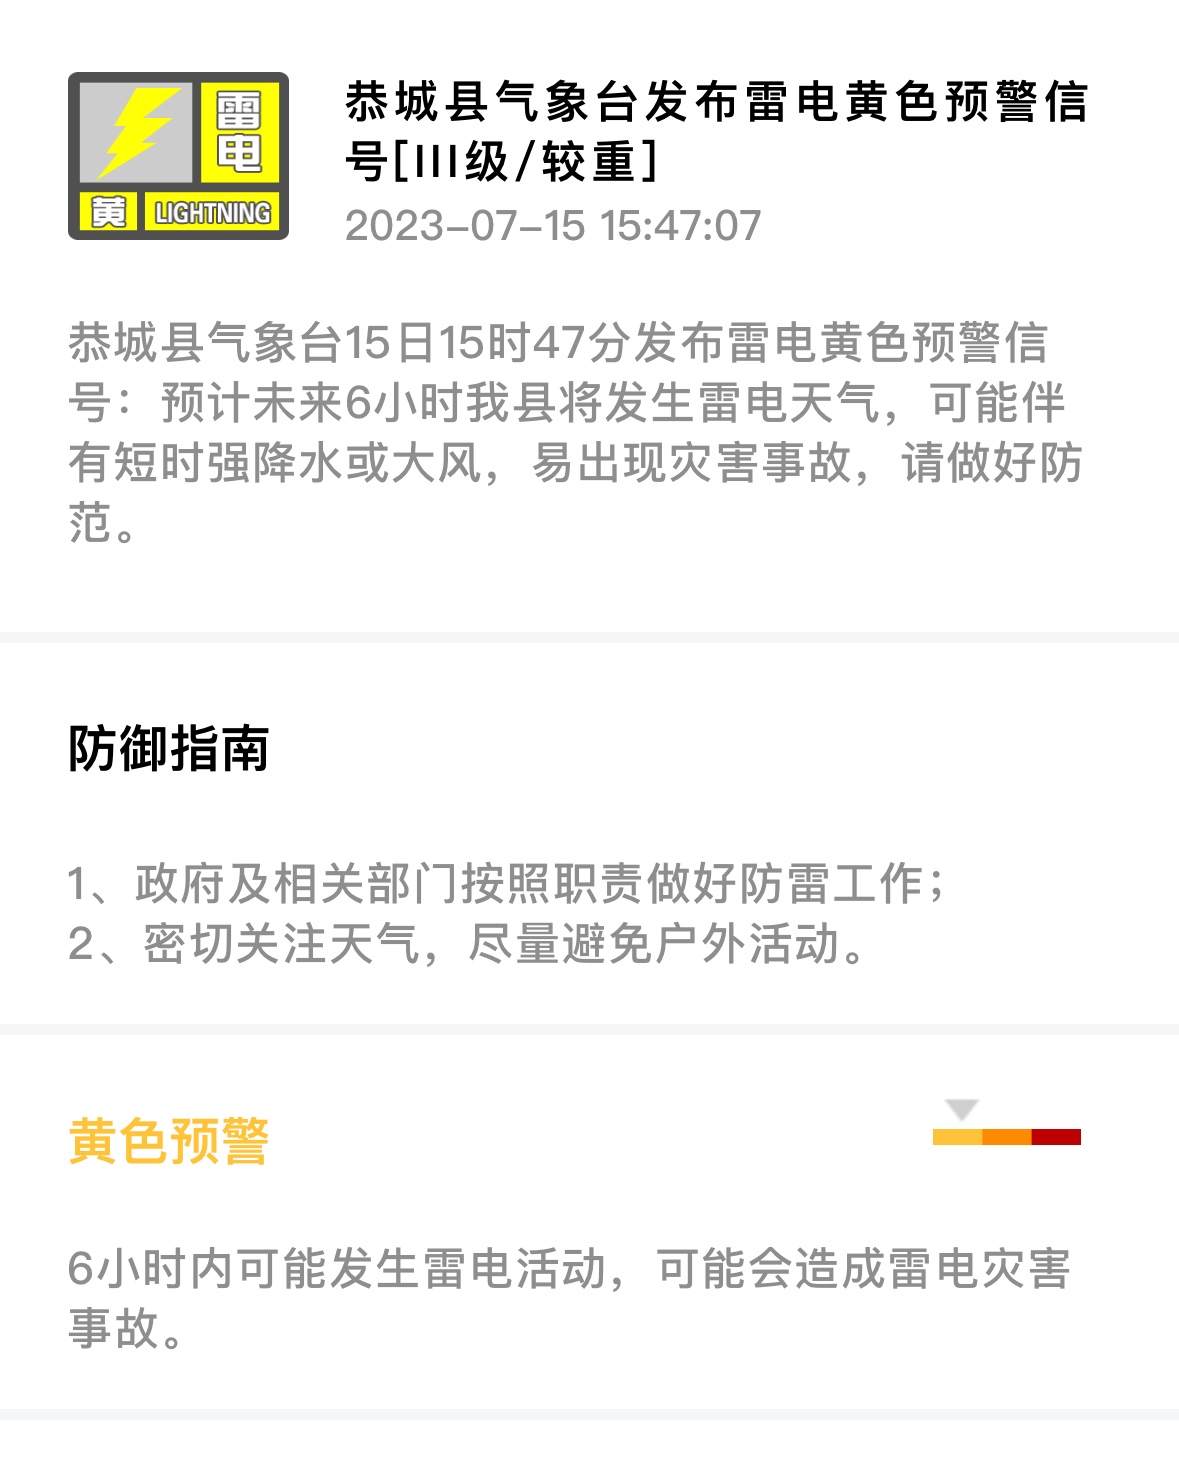 恭城气象台连续发布三条气象预警33 / 作者:论坛小编01 / 帖子ID:308546